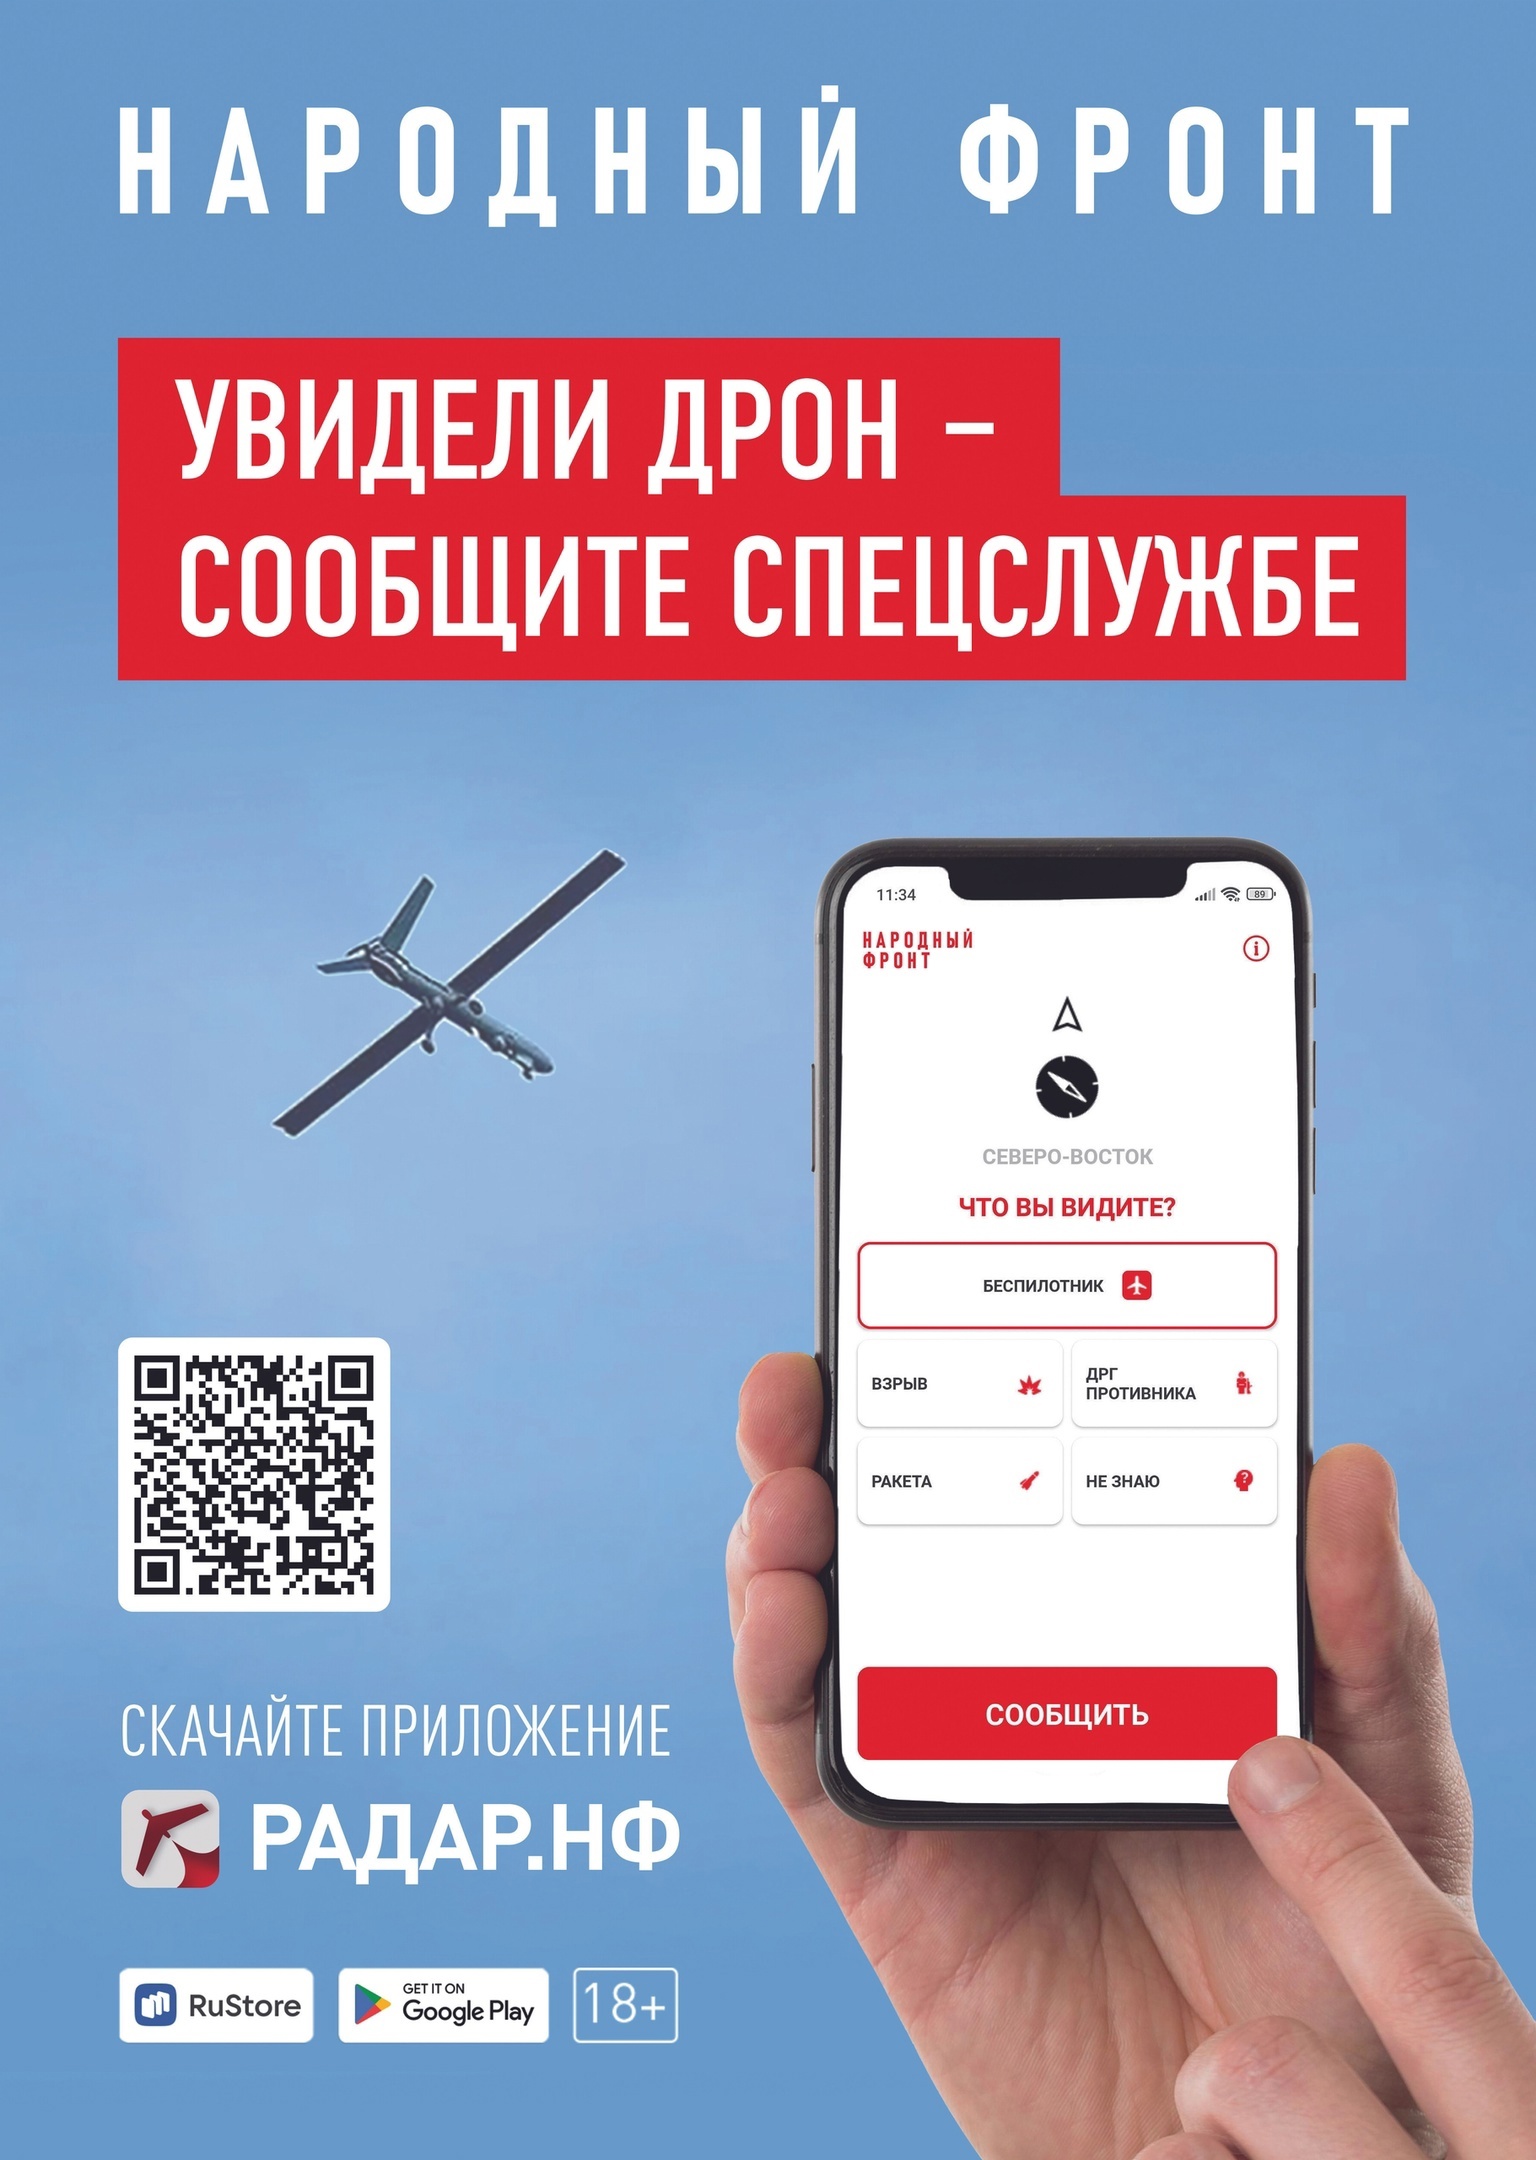 Народный фронт разработал приложение для аndroid-смартфонов «Радар.НФ»..